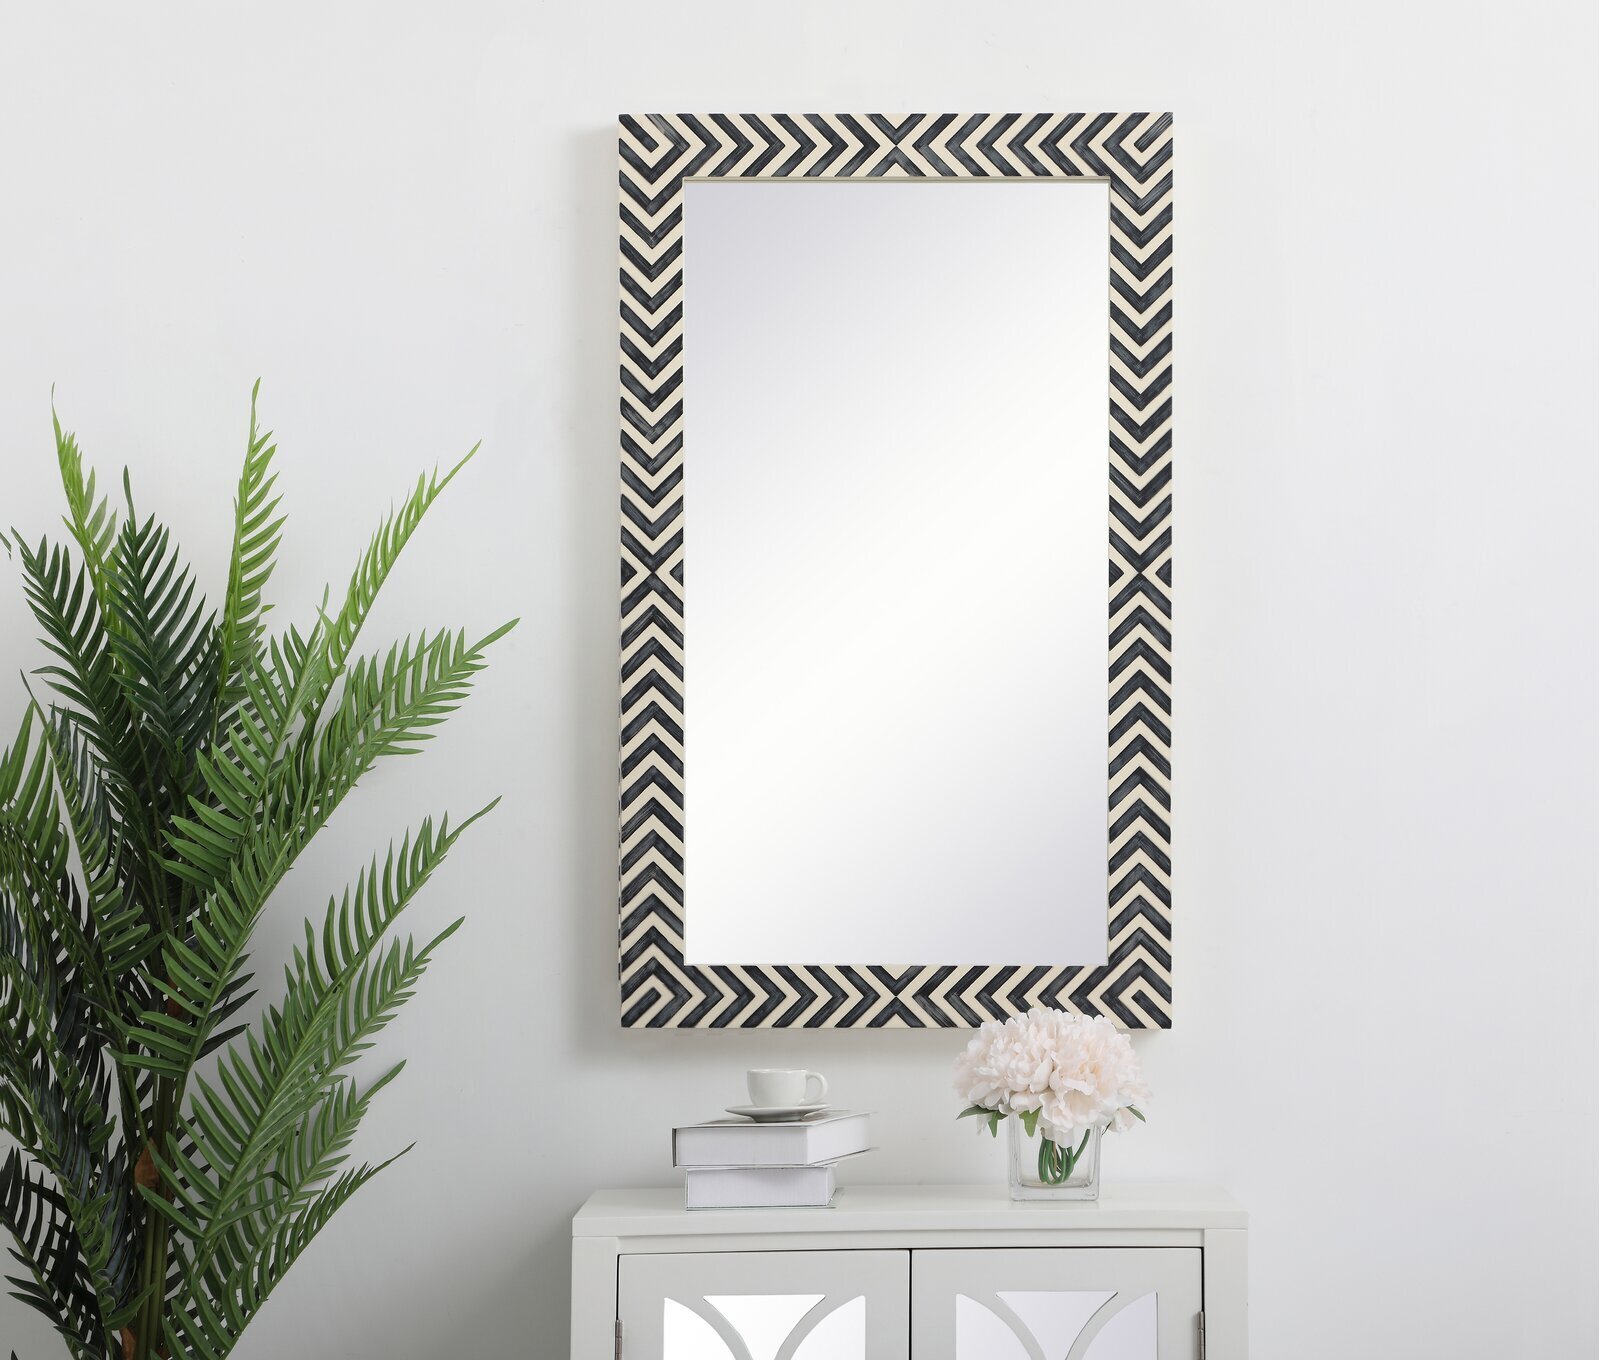 Oversized rectangular mirror as an accent